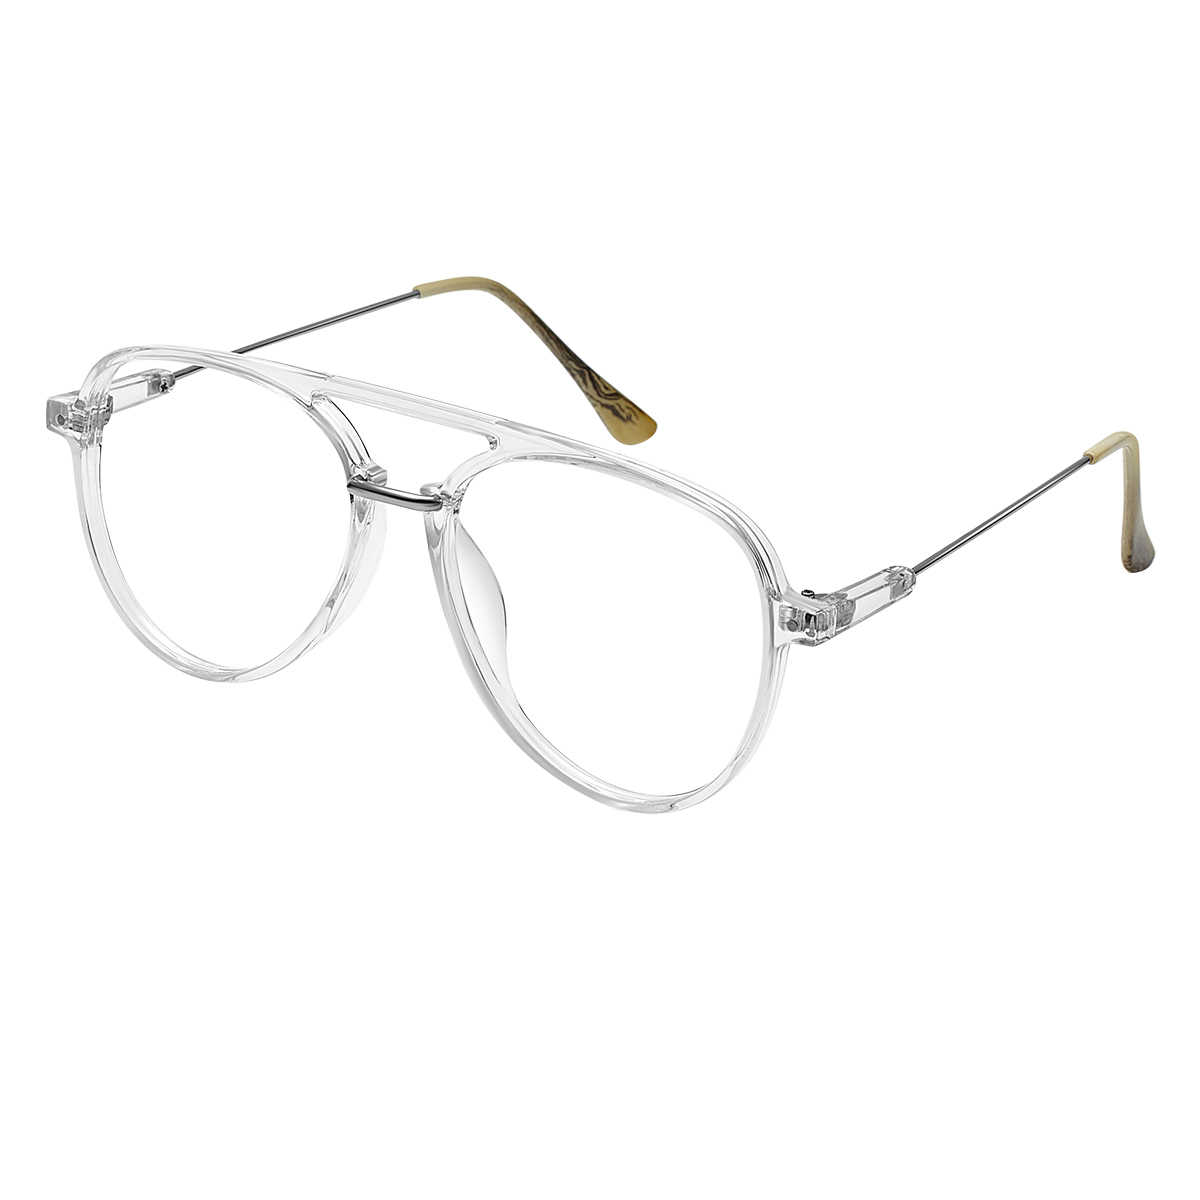 Avicenna - Aviator Gold black Glasses for Men & Women - EFE